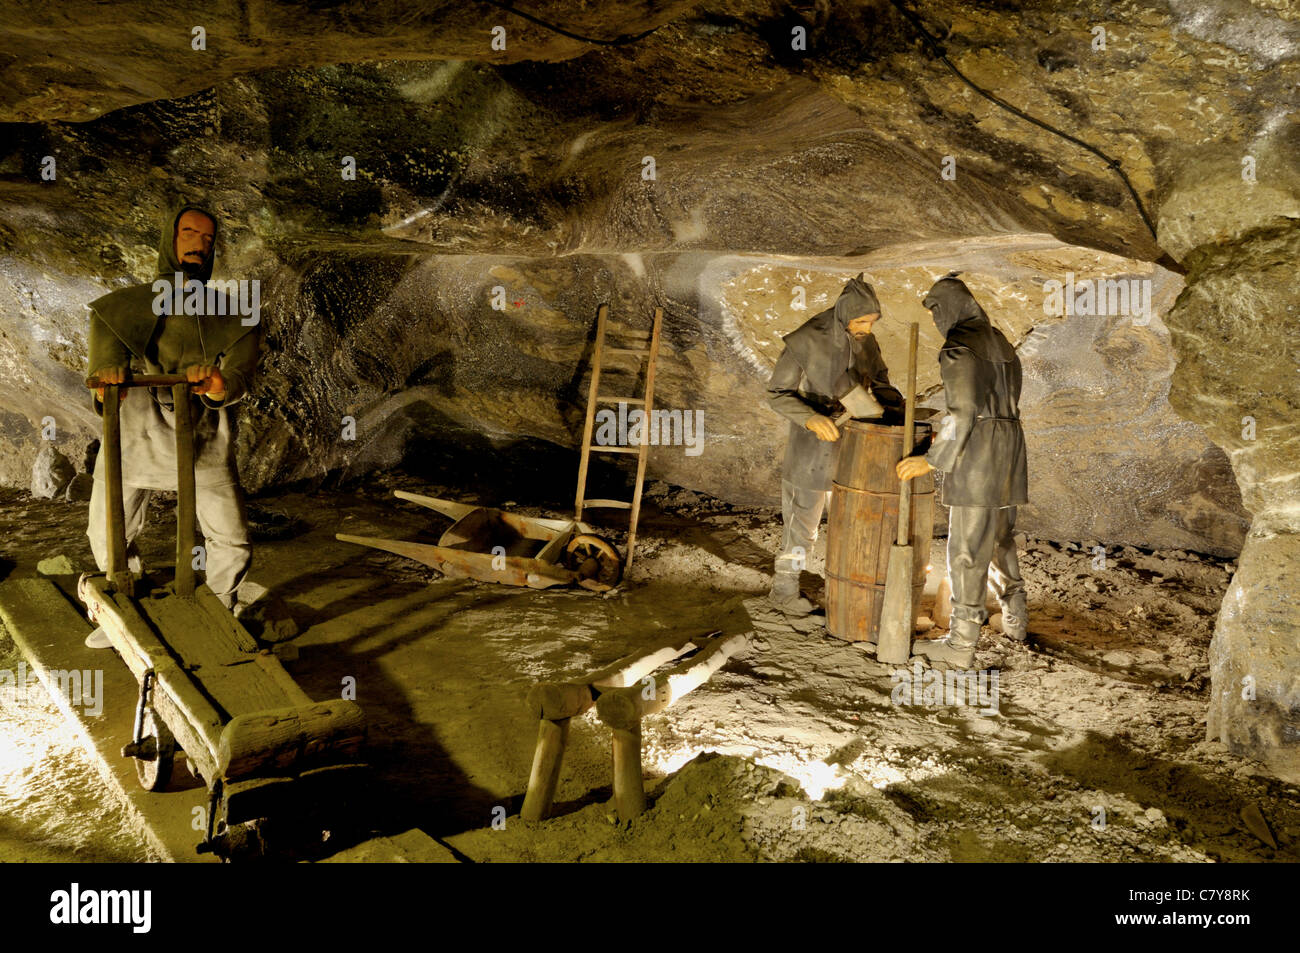 Las minas de sal de Wieliczka histórico maquinaria y métodos de minería subterránea utilizada para extraer la roca de sal de la mina Foto de stock